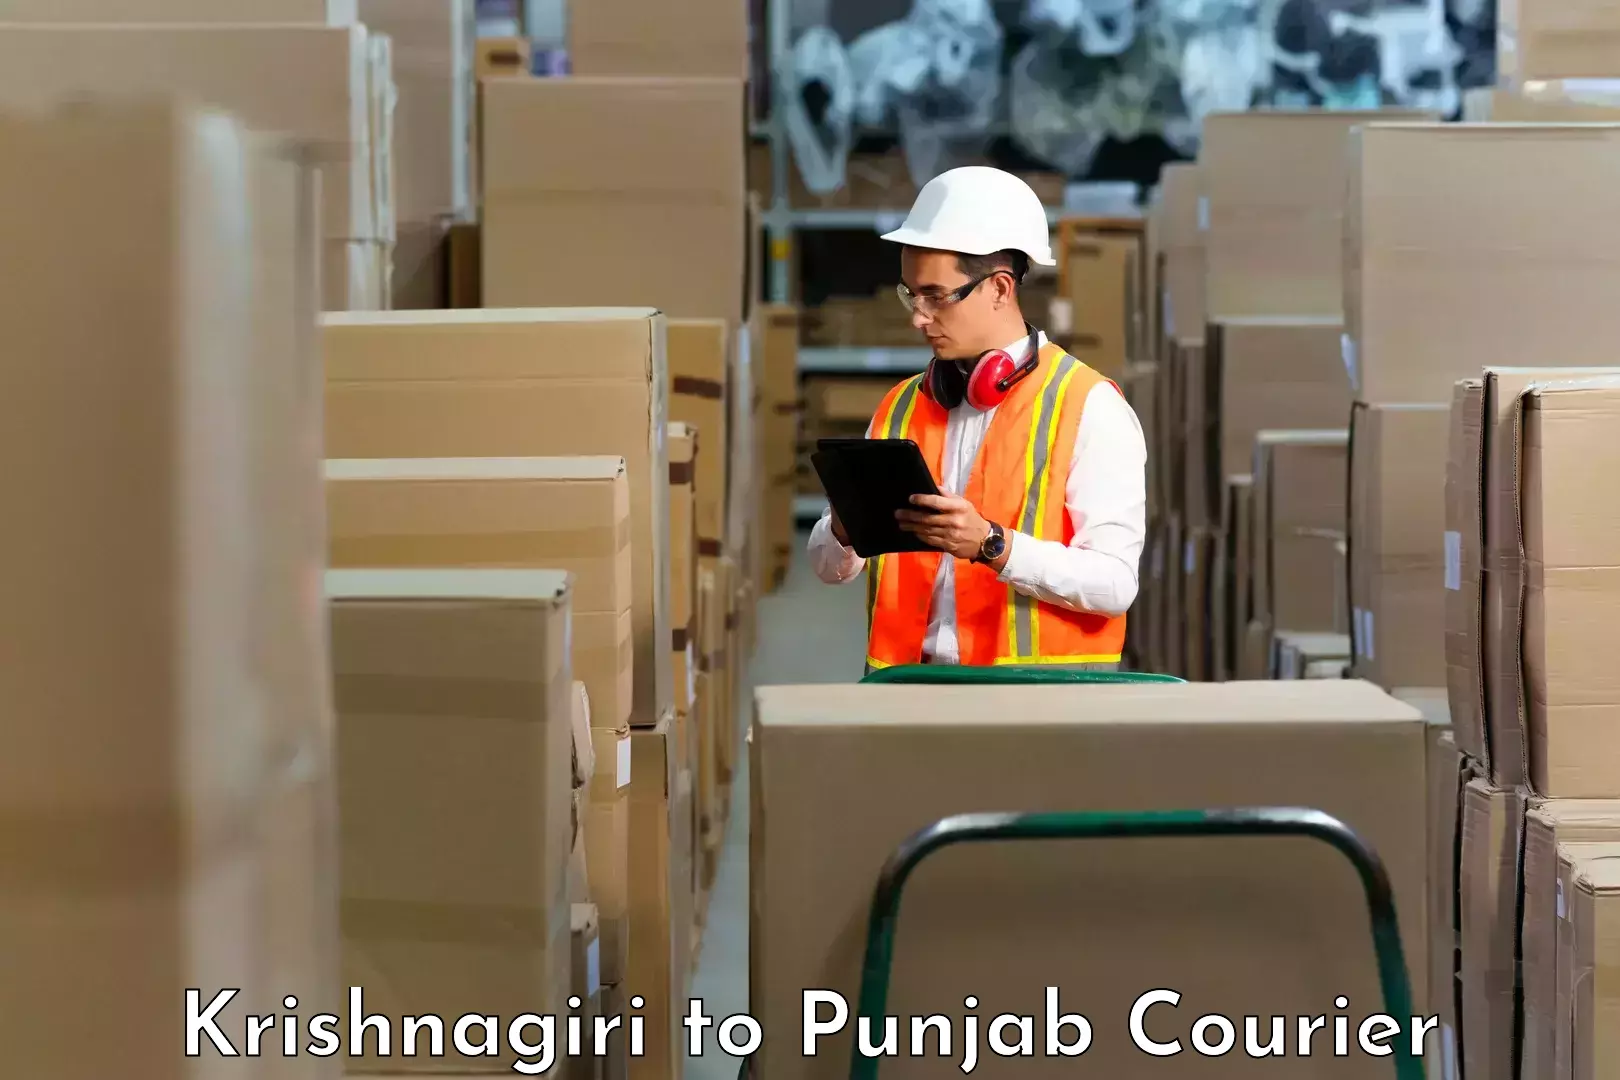 Courier service booking Krishnagiri to Punjab